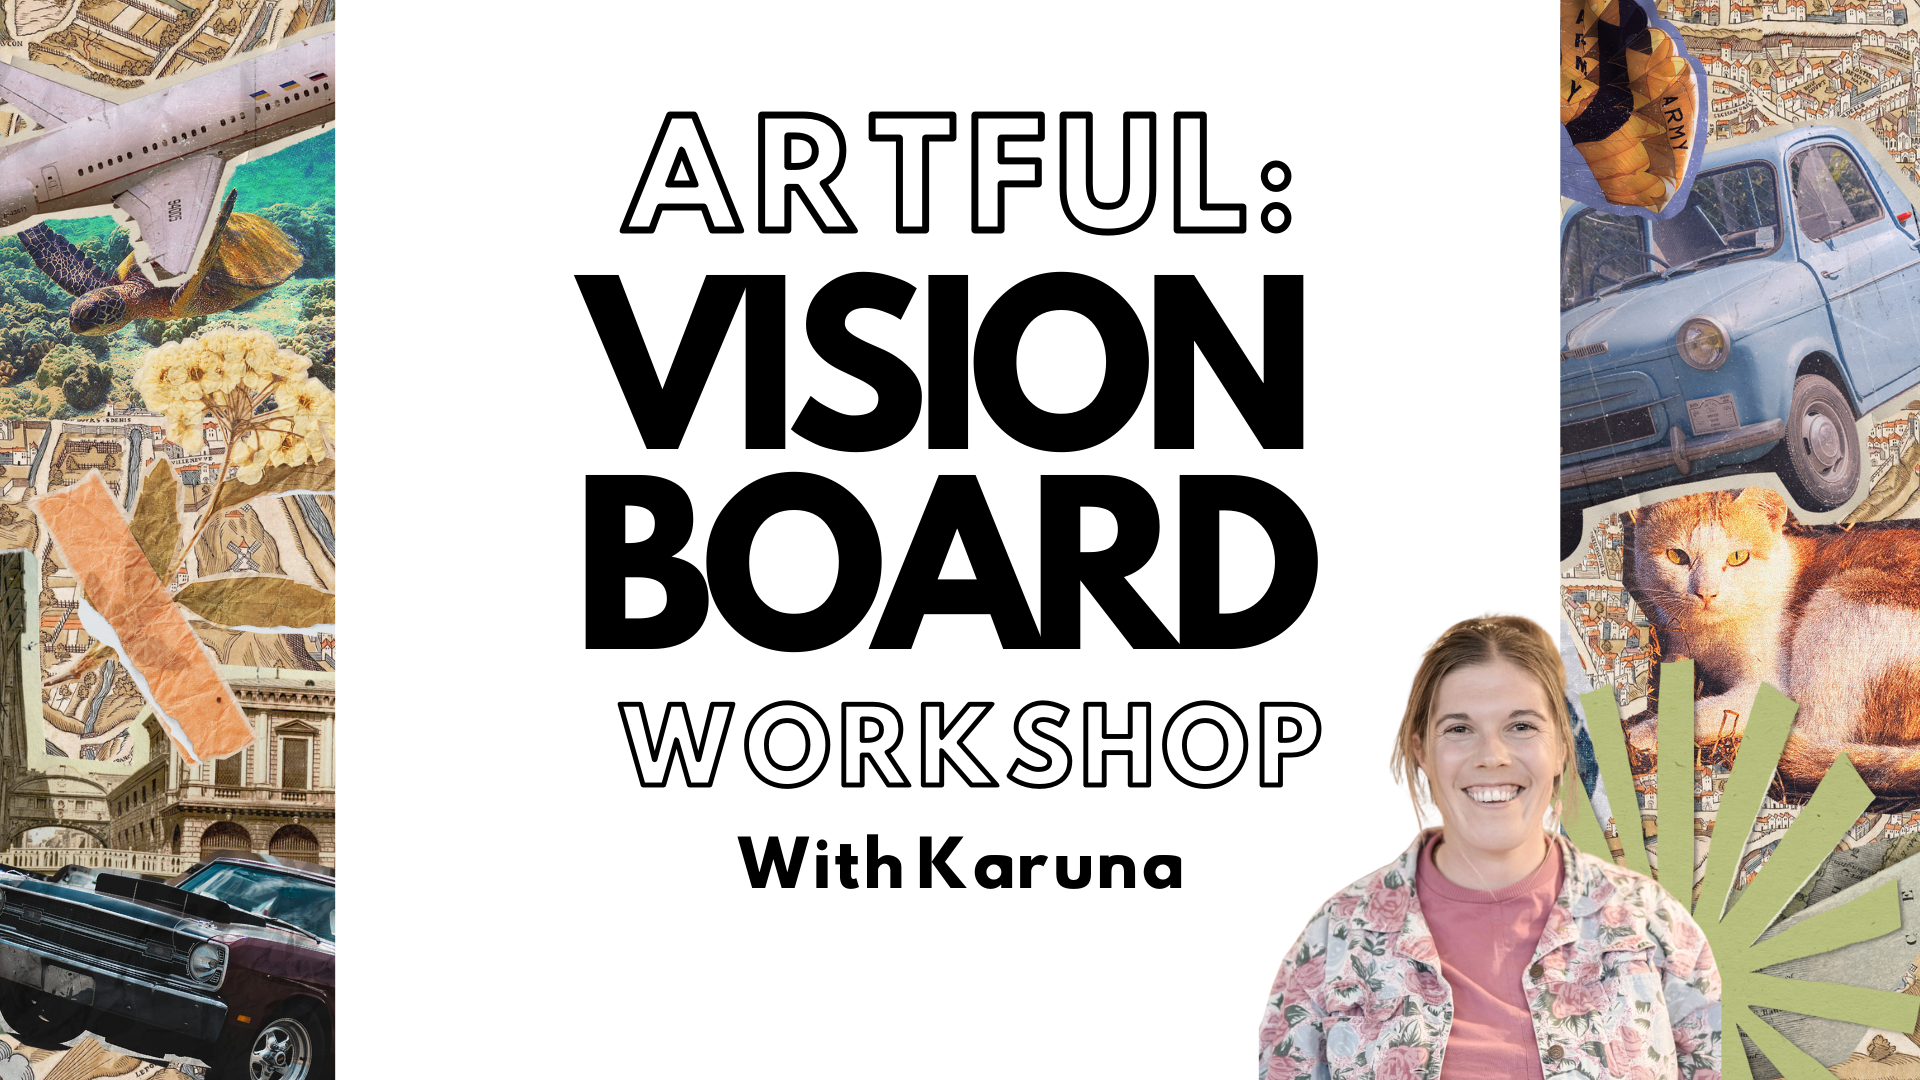 Artful: Vision Board Workshop